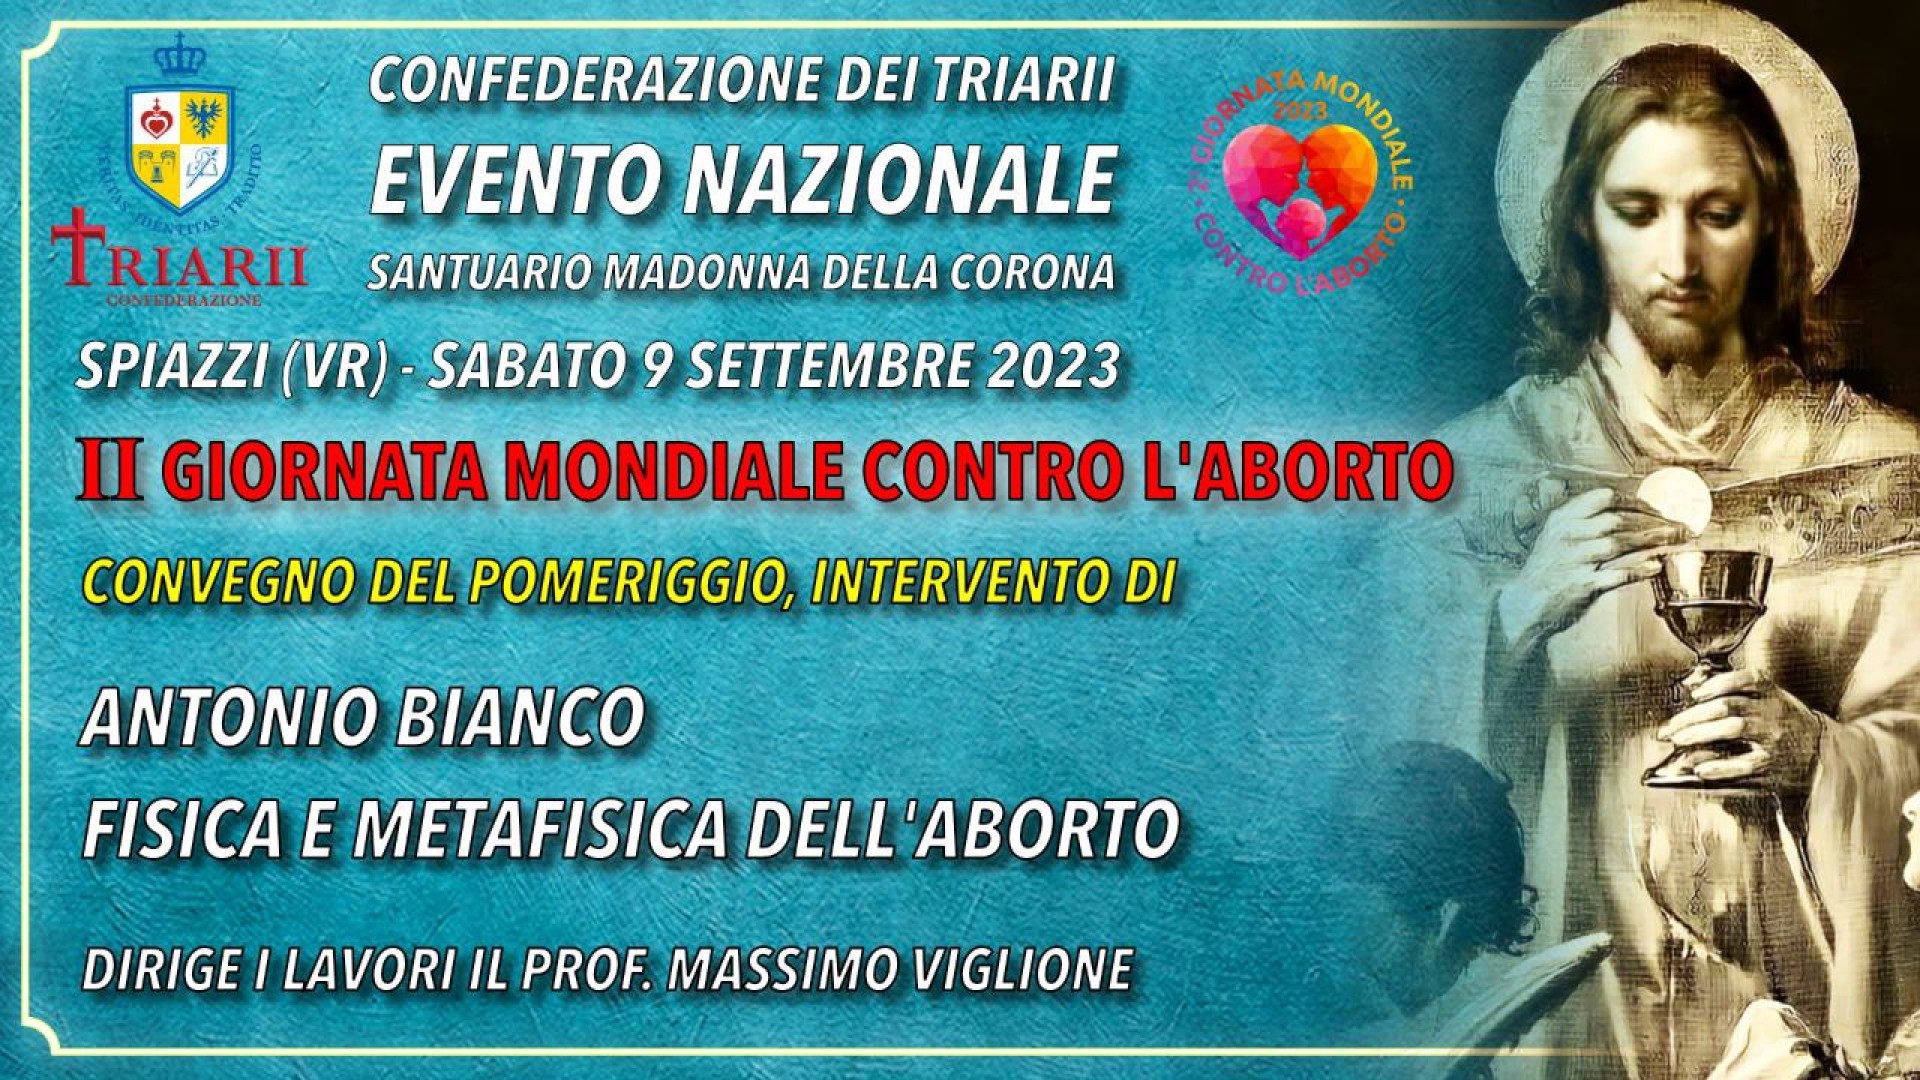 FISICA E METAFISICA DELL'ABORTO. Antonio Bianco